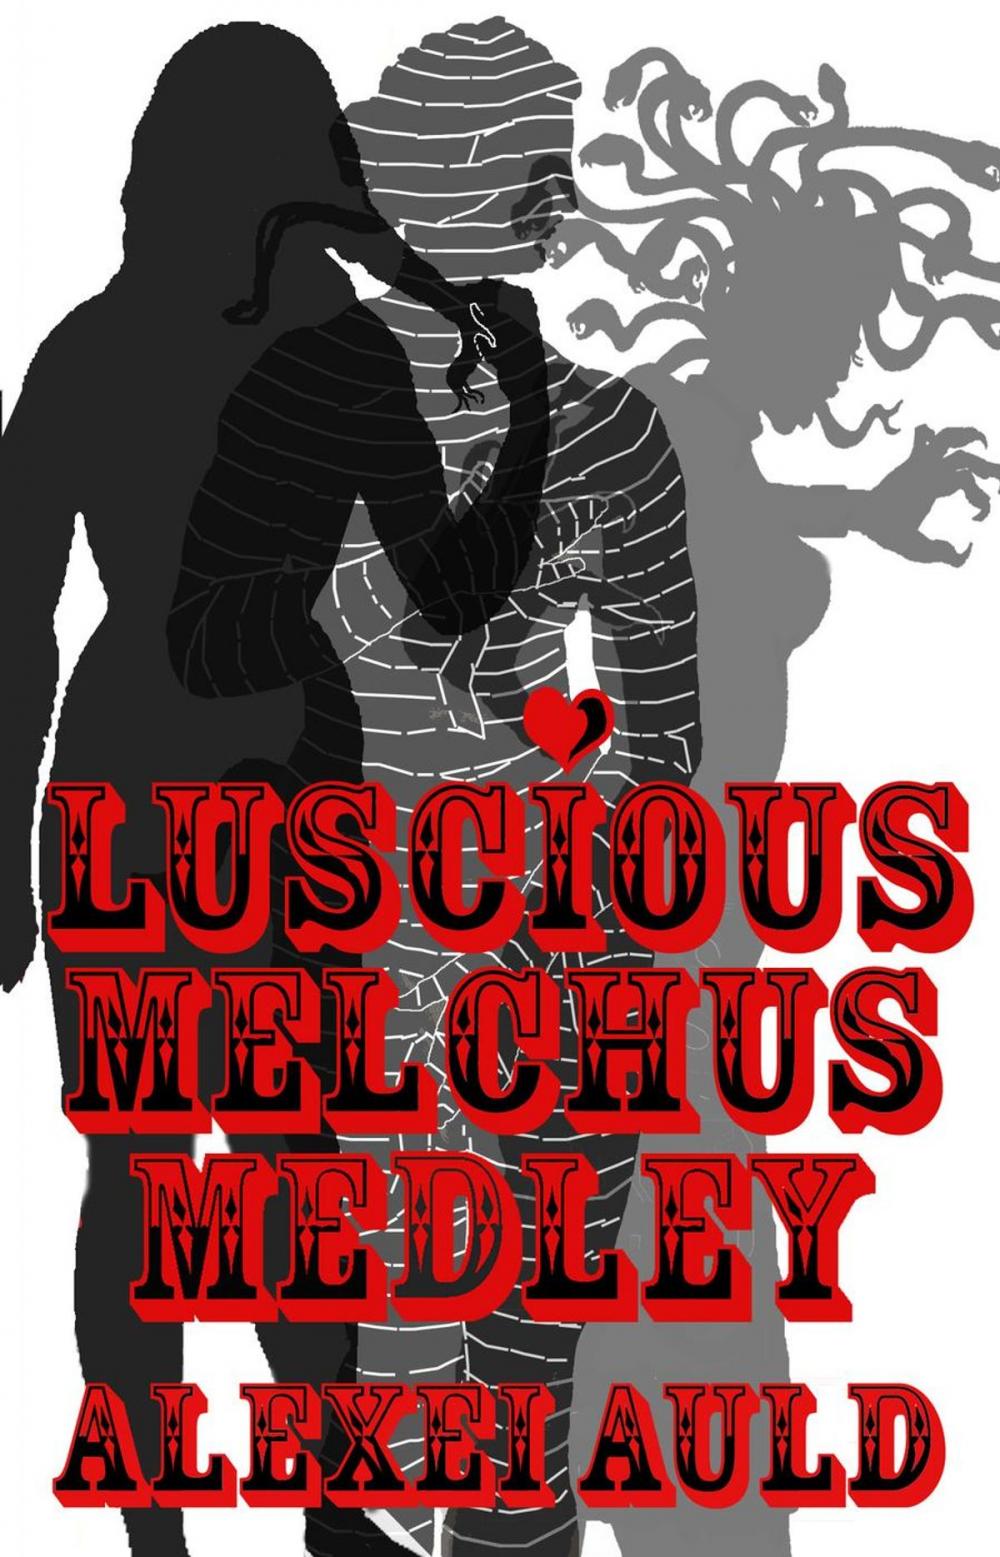 Big bigCover of Luscious Melchus Medley